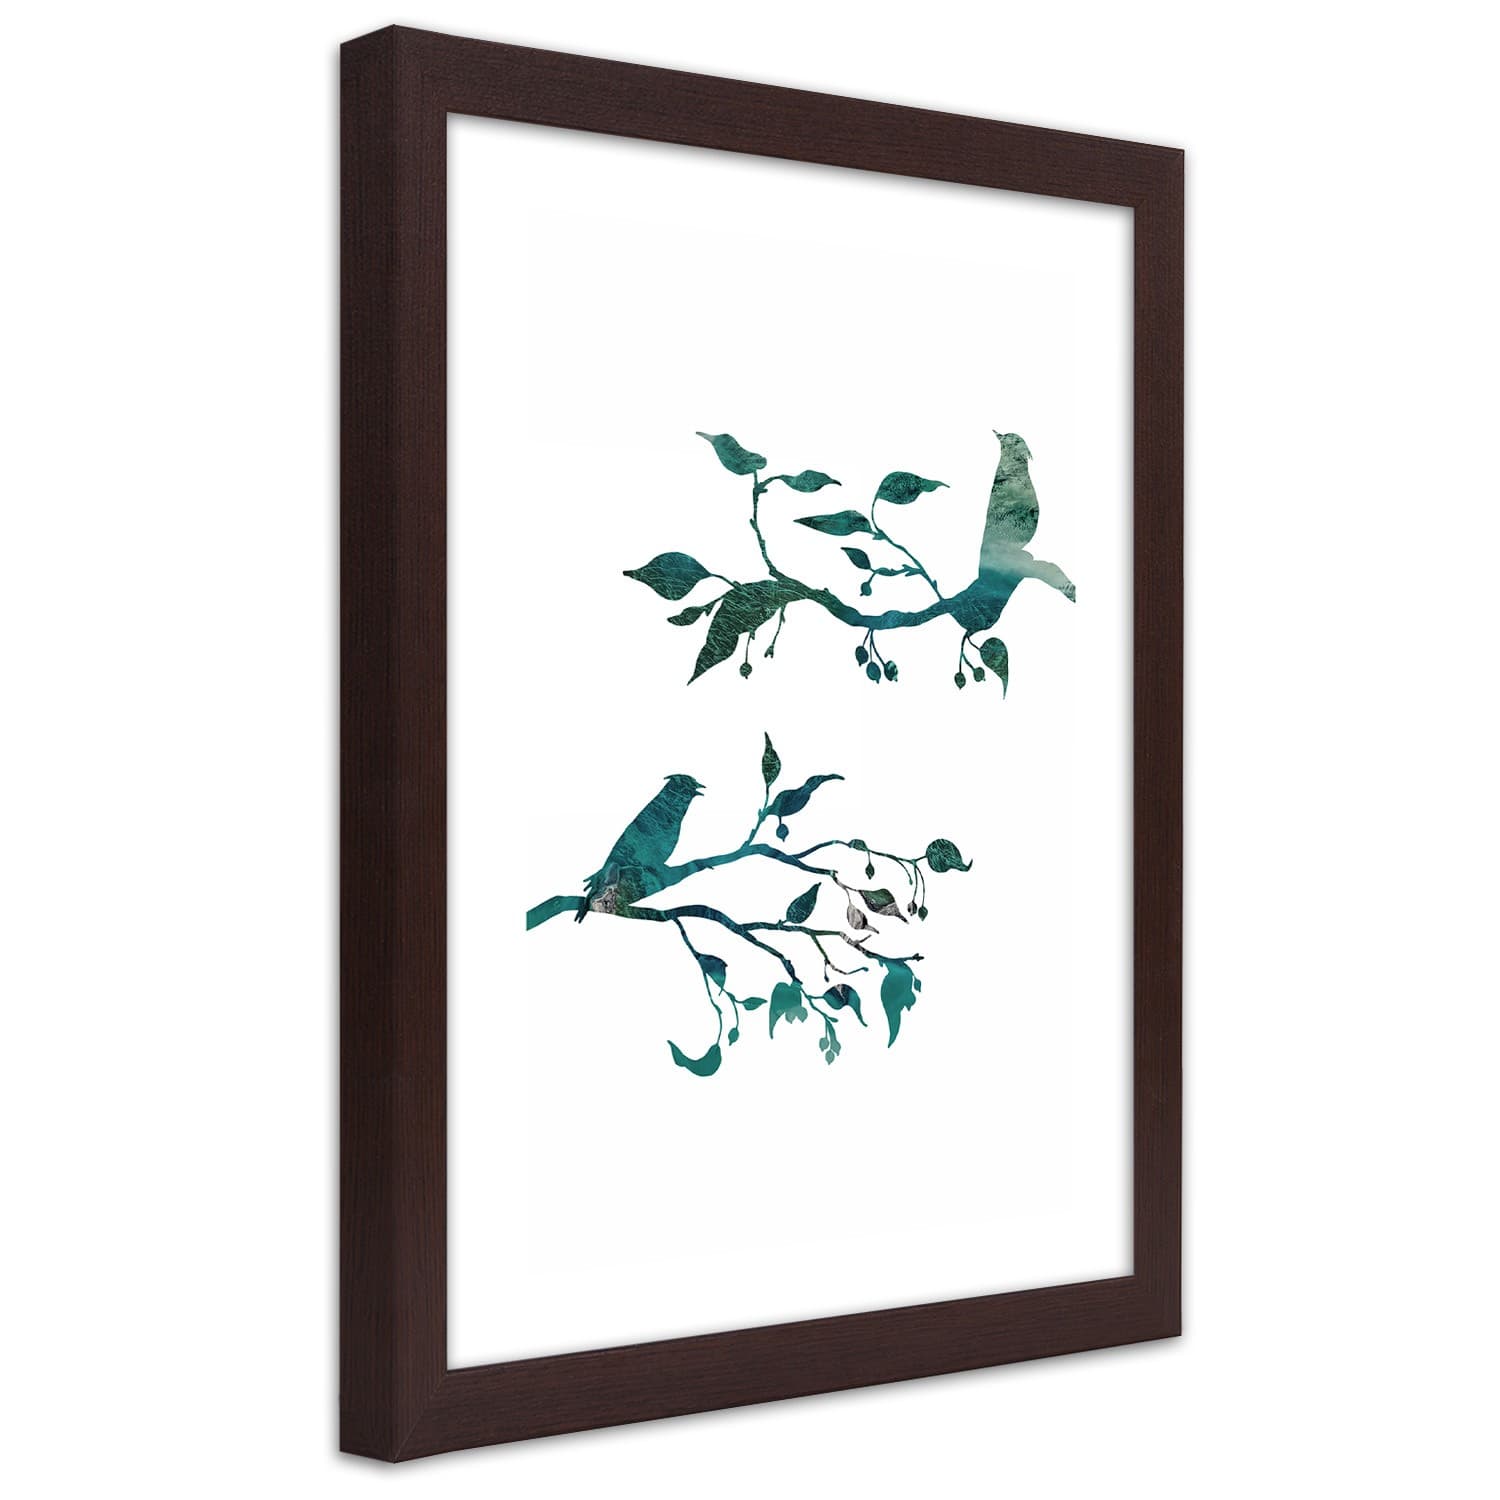 Plakat w ramie brązowej, Ptaki na gałązkach (Rozmiar 60x90)